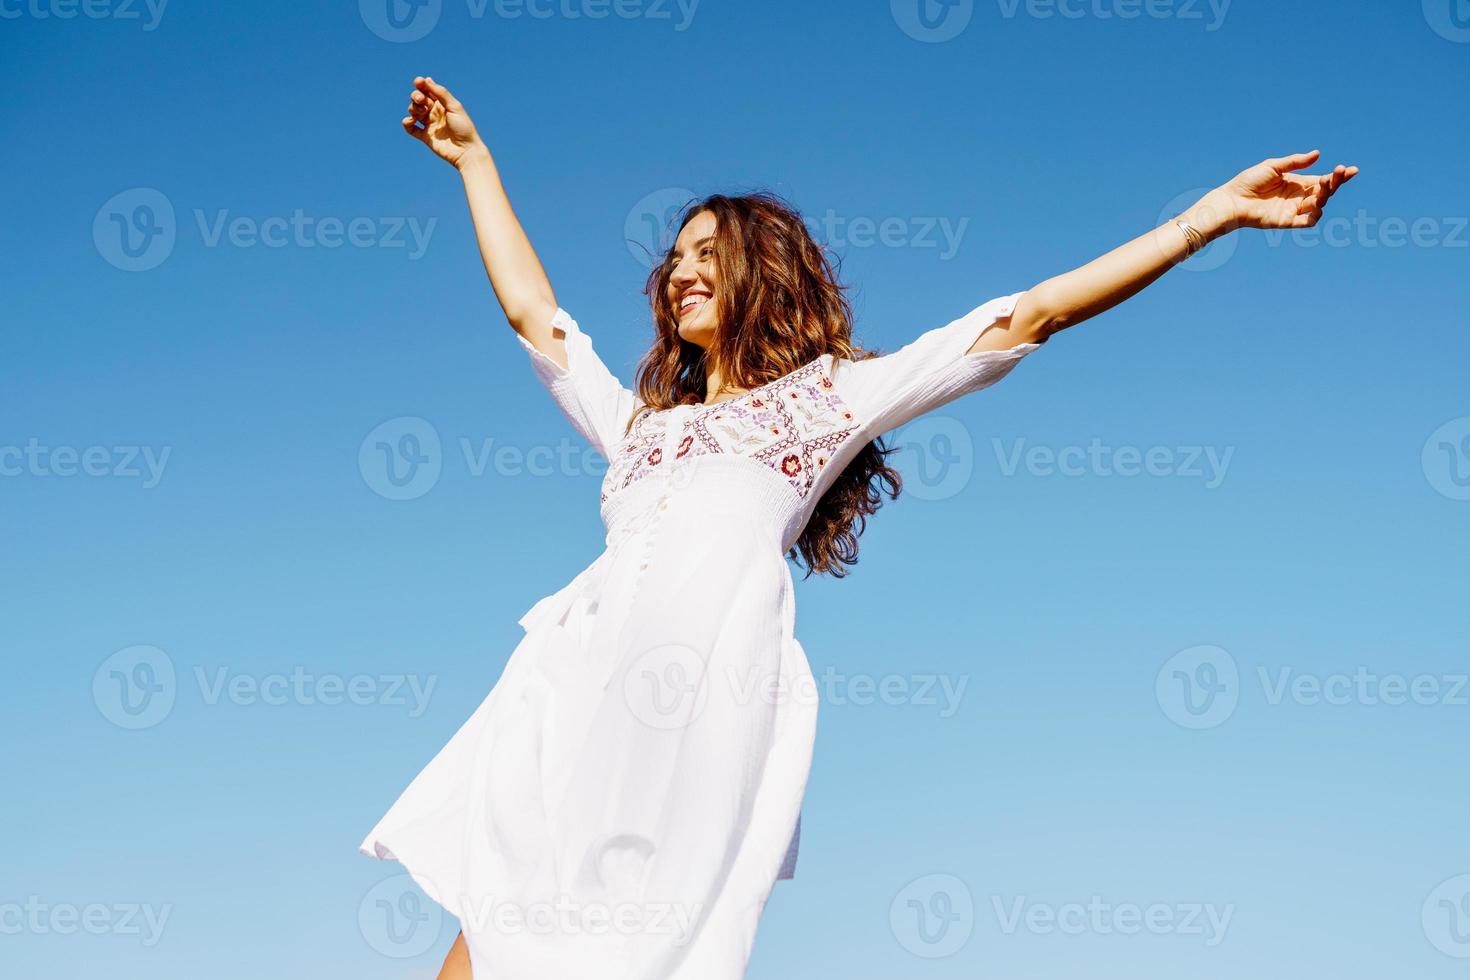 giovane donna che alza le braccia in un bellissimo abito bianco contro un cielo blu foto